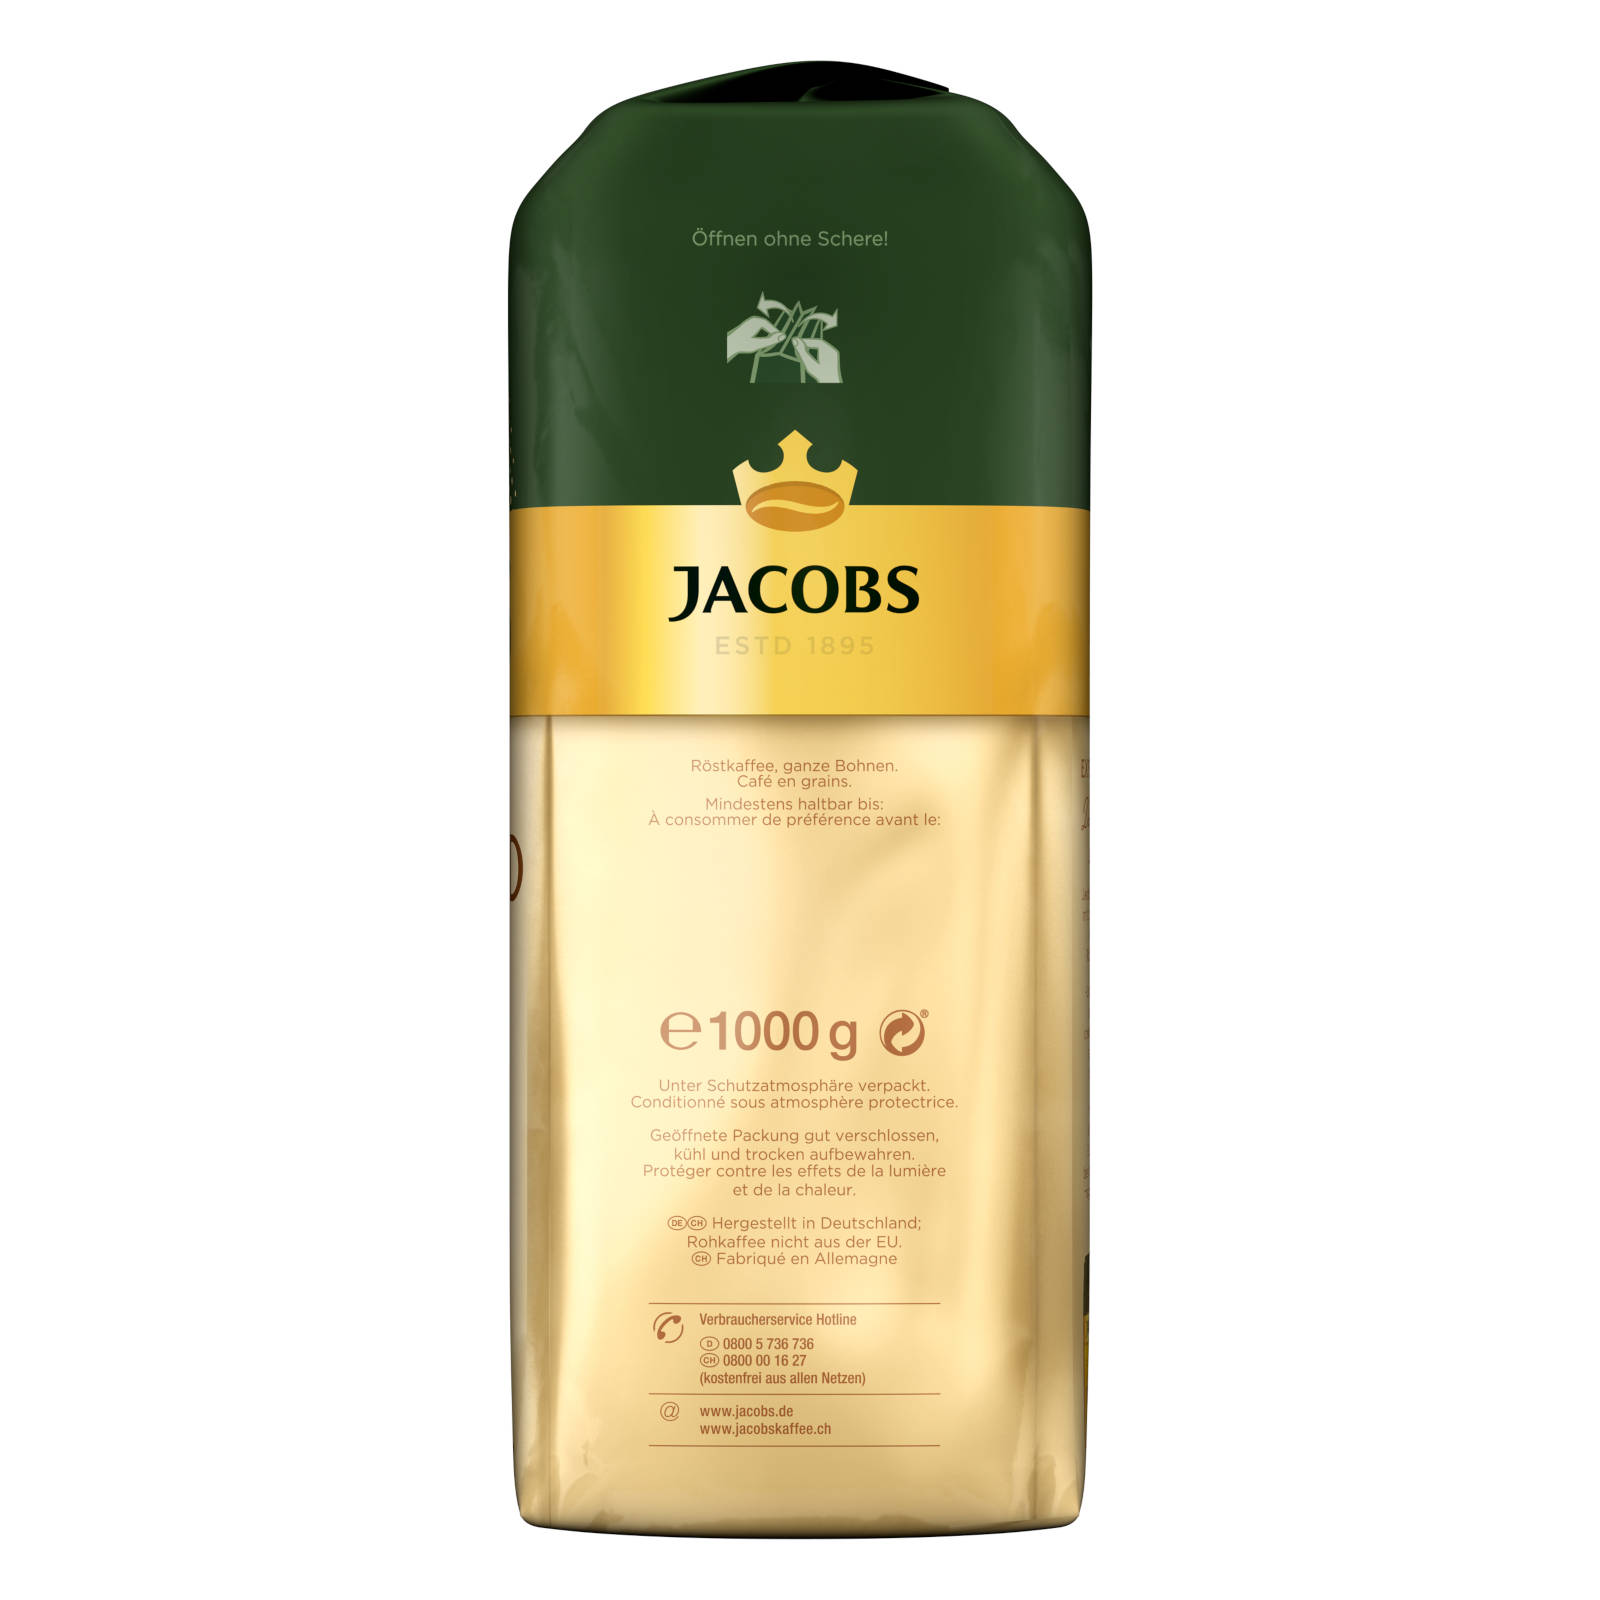 JACOBS Expertenröstung Crema Gold x geröstete 4 Kaffeebohnen (Kaffeevollautomat) kg 1 ganze